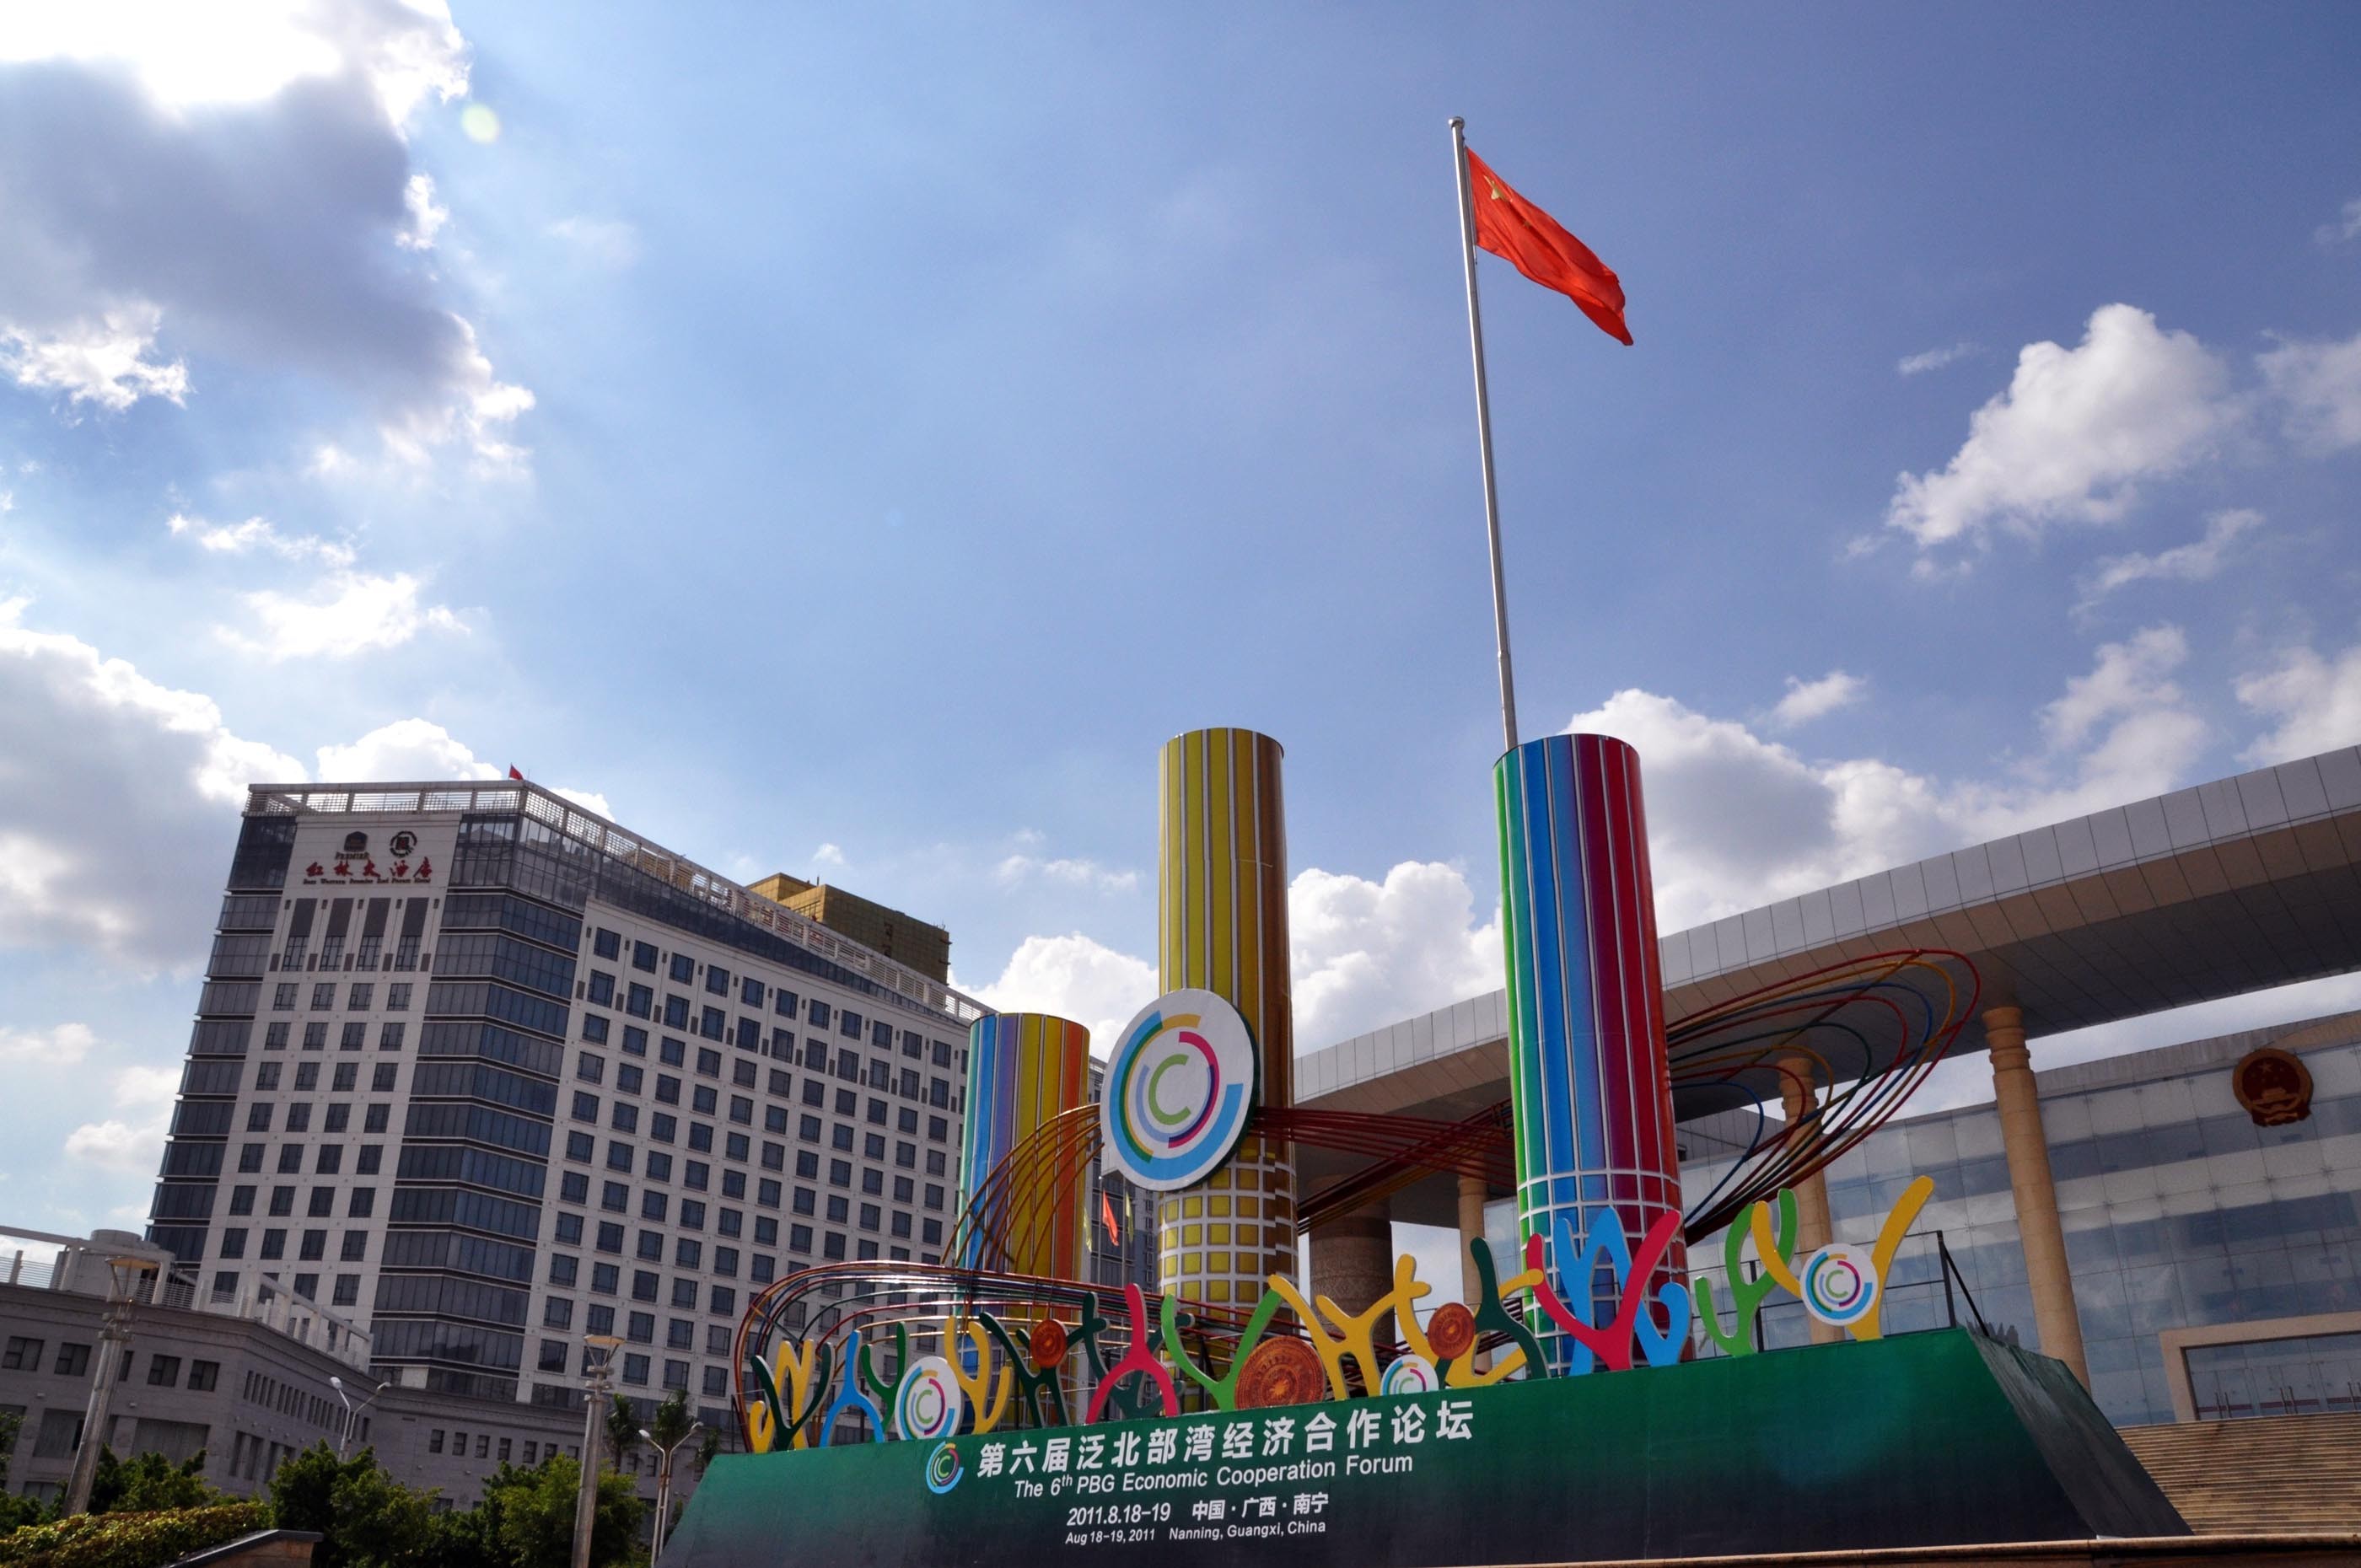 第六届泛北部湾经济合作论坛将在广西南宁举行(图)